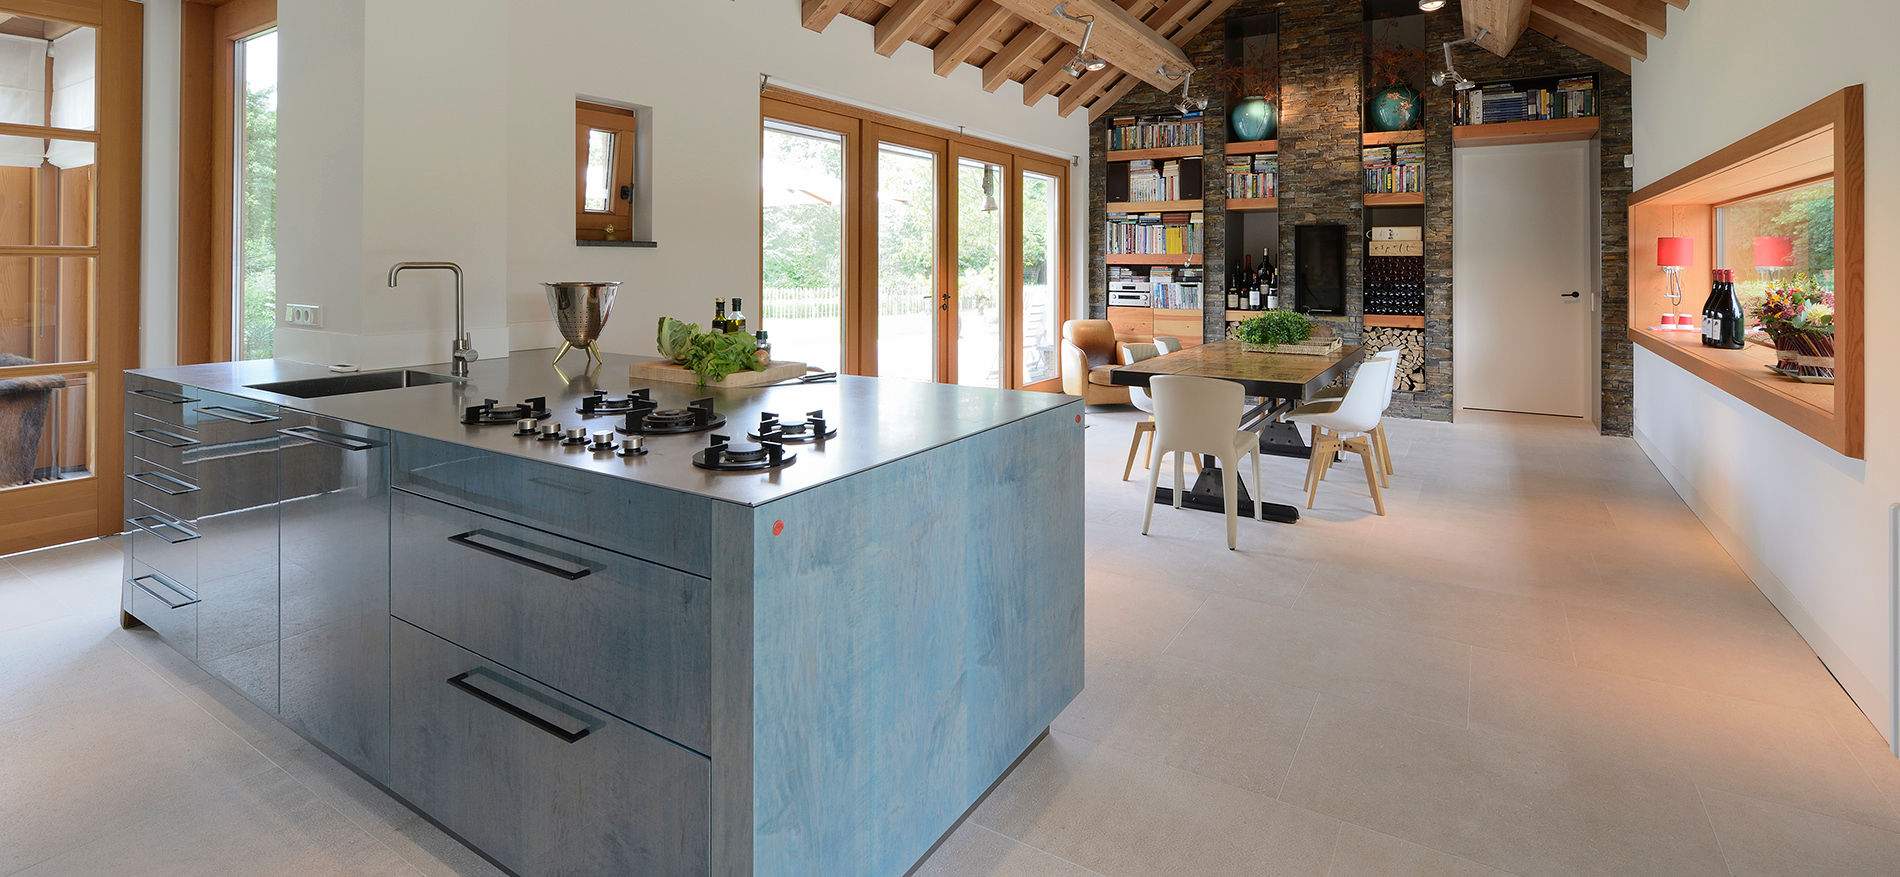 Signature keuken ontwerp met 3 Michelinsterren voor landhuis regio Utrecht, EMYKO | Residential Interior Design EMYKO | Residential Interior Design Modern kitchen